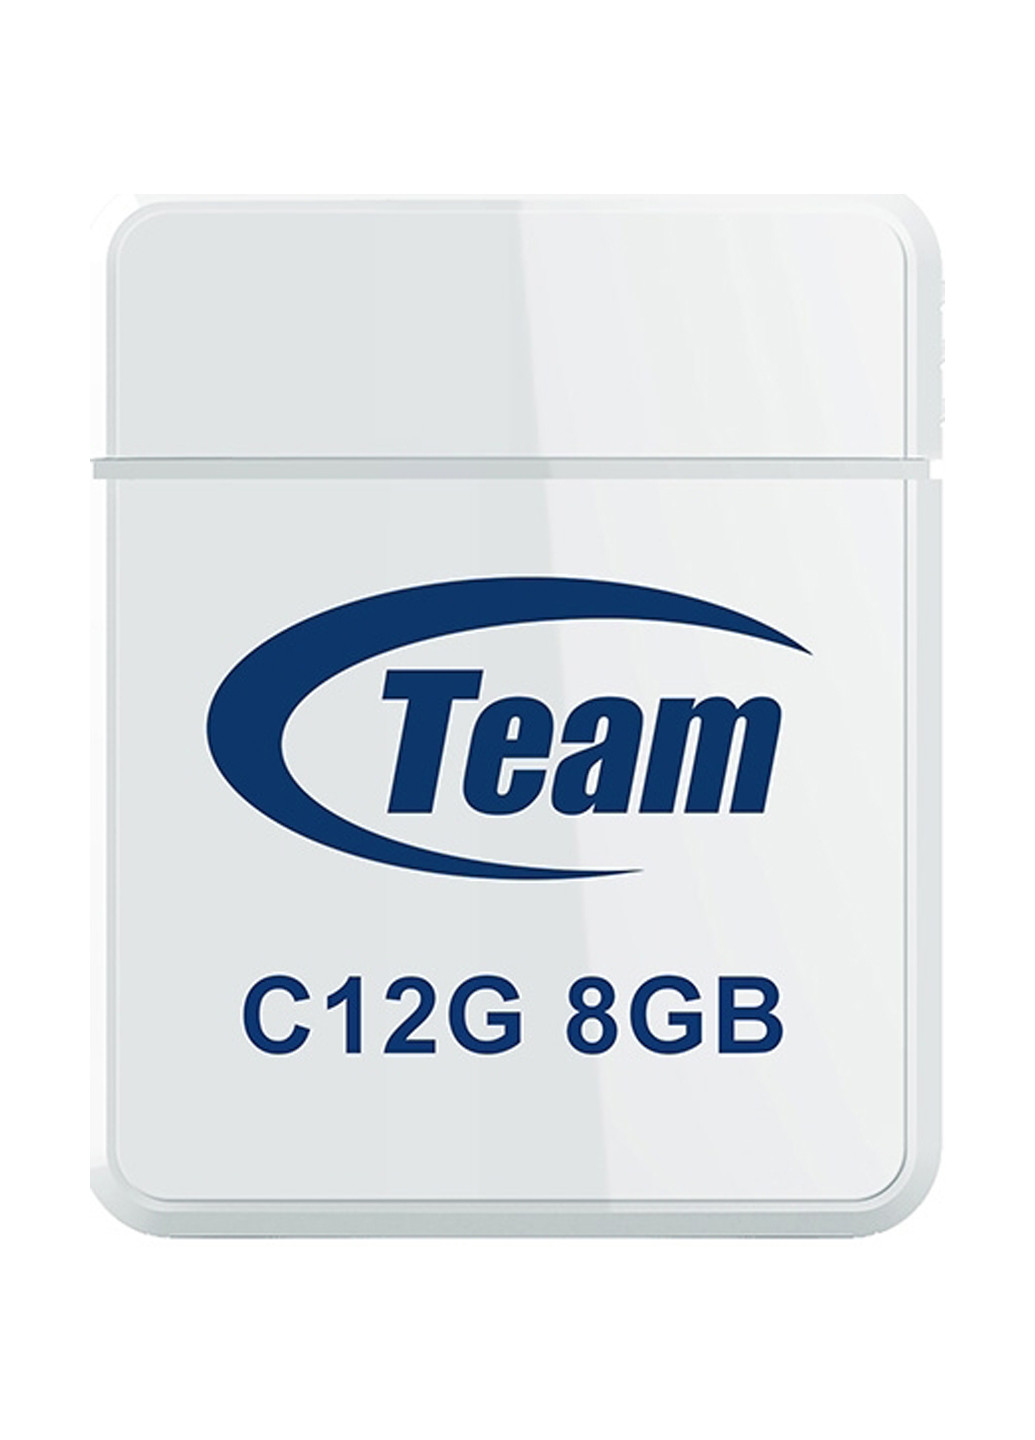 Флеш пам'ять USB C12G 8Gb Black (TC12G8GB01) Team флеш память usb team c12g 8gb black (tc12g8gb01) (134201676)